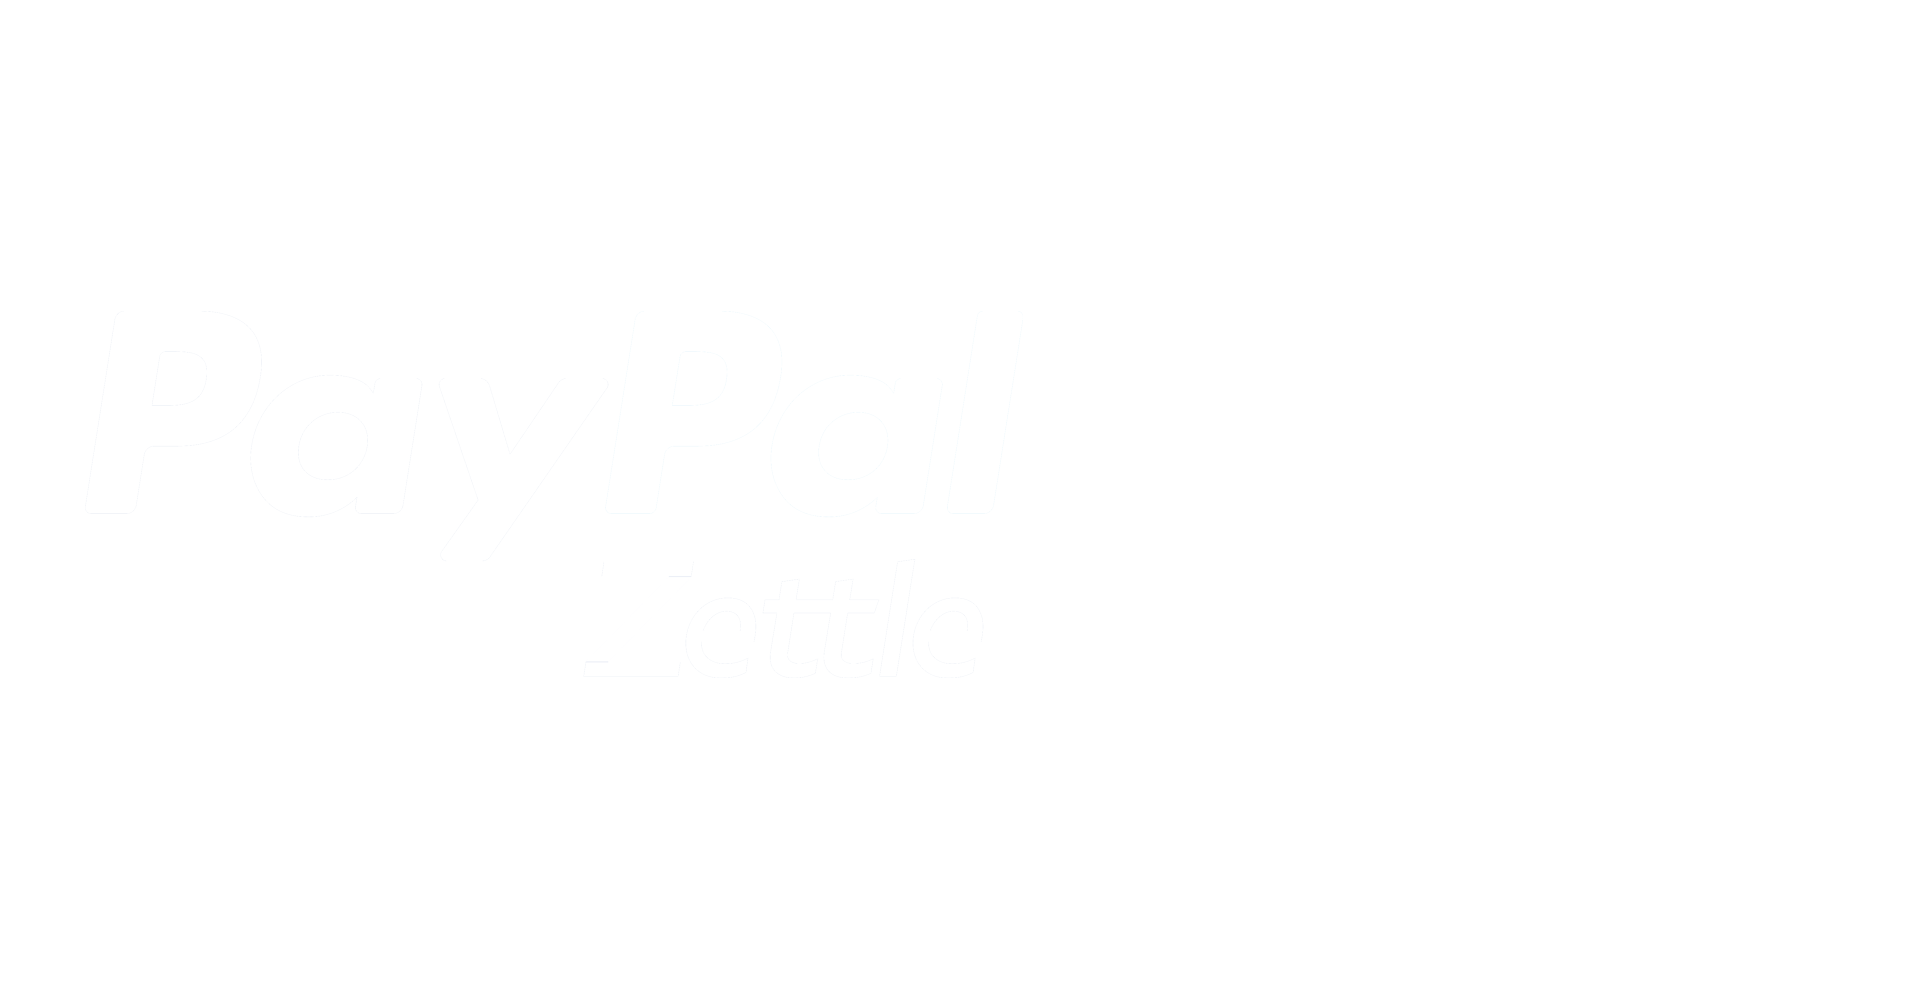 PayPal Zettle & Tabology logos